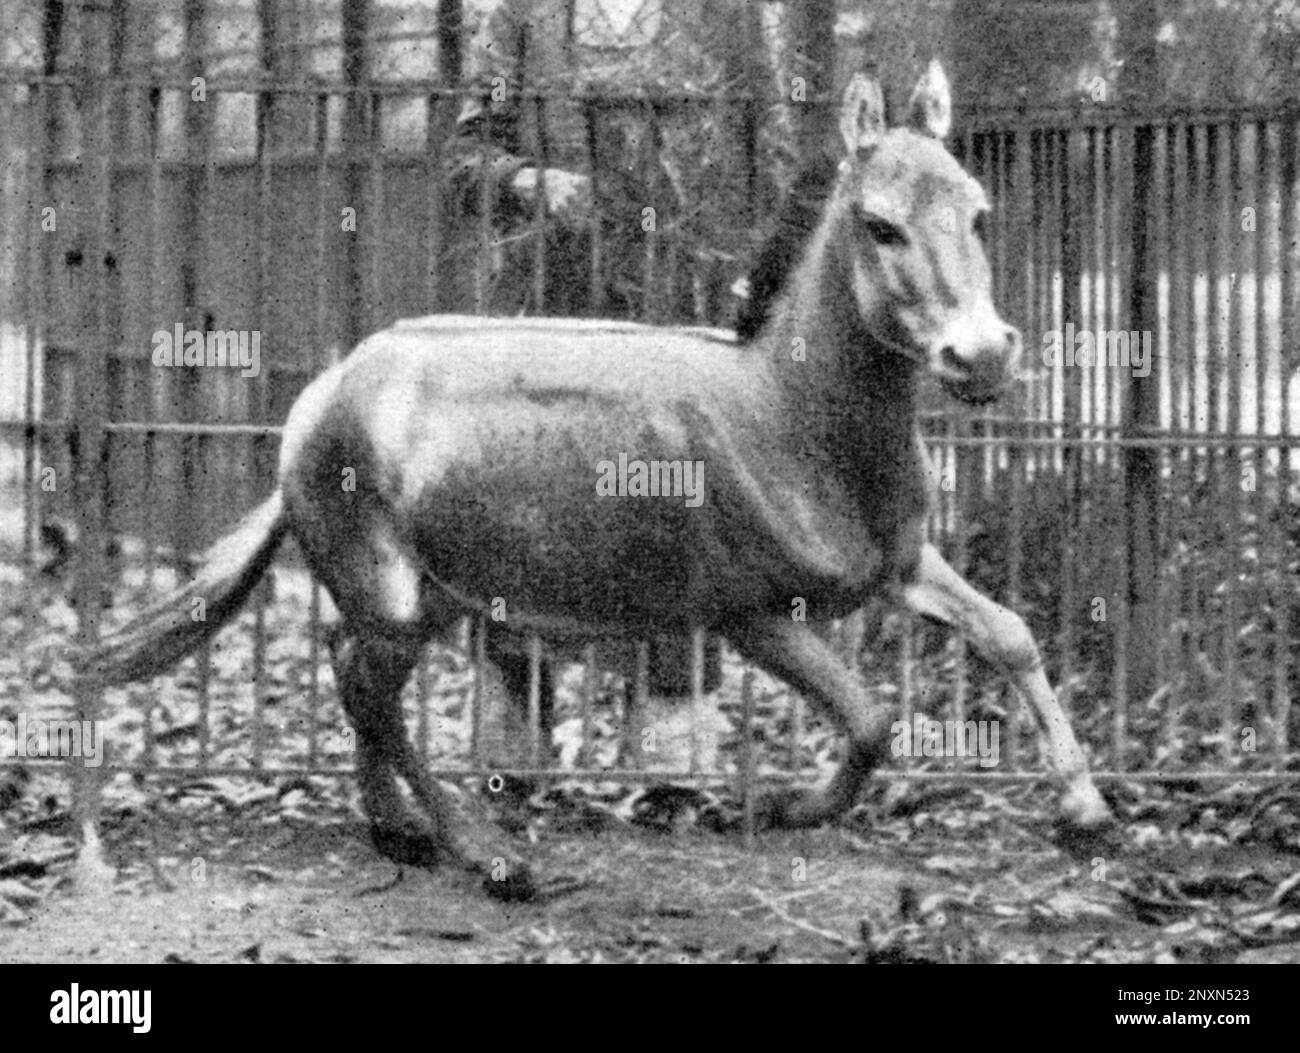 Galopant des sauvages syriens dans le zoo de Vienne, 1915. L'ass sauvage syrien (Equus hemionus hemippus), moins connu sous le nom d'hémippe, d'achdari ou d'onager mésopotamien ou syrien, est une sous-espèce éteinte d'onager originaire de la péninsule arabique et des régions environnantes. C'était le plus petit équin et ne pouvait pas être domestiqué. Sa couleur a changé avec les saisons. Photo de Conrad Keller, 1915. Banque D'Images